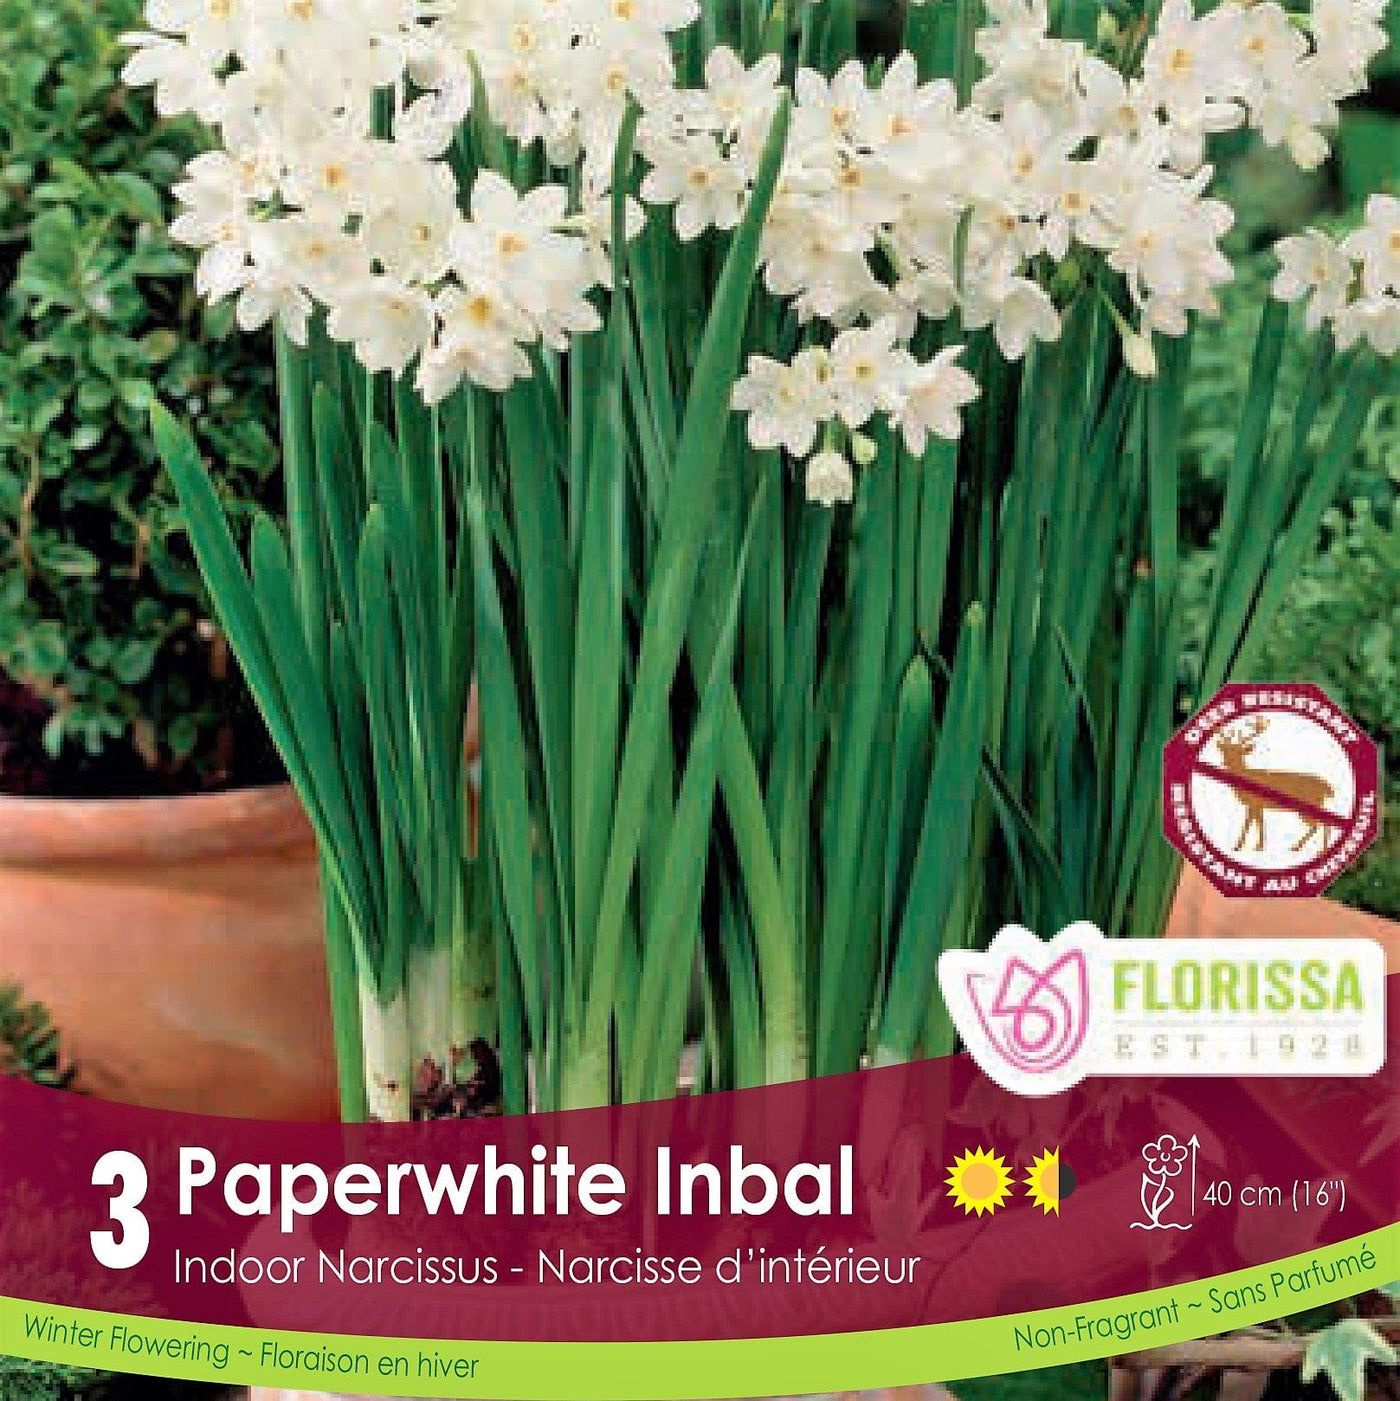 White Narcissus Paperwhite Inbal 